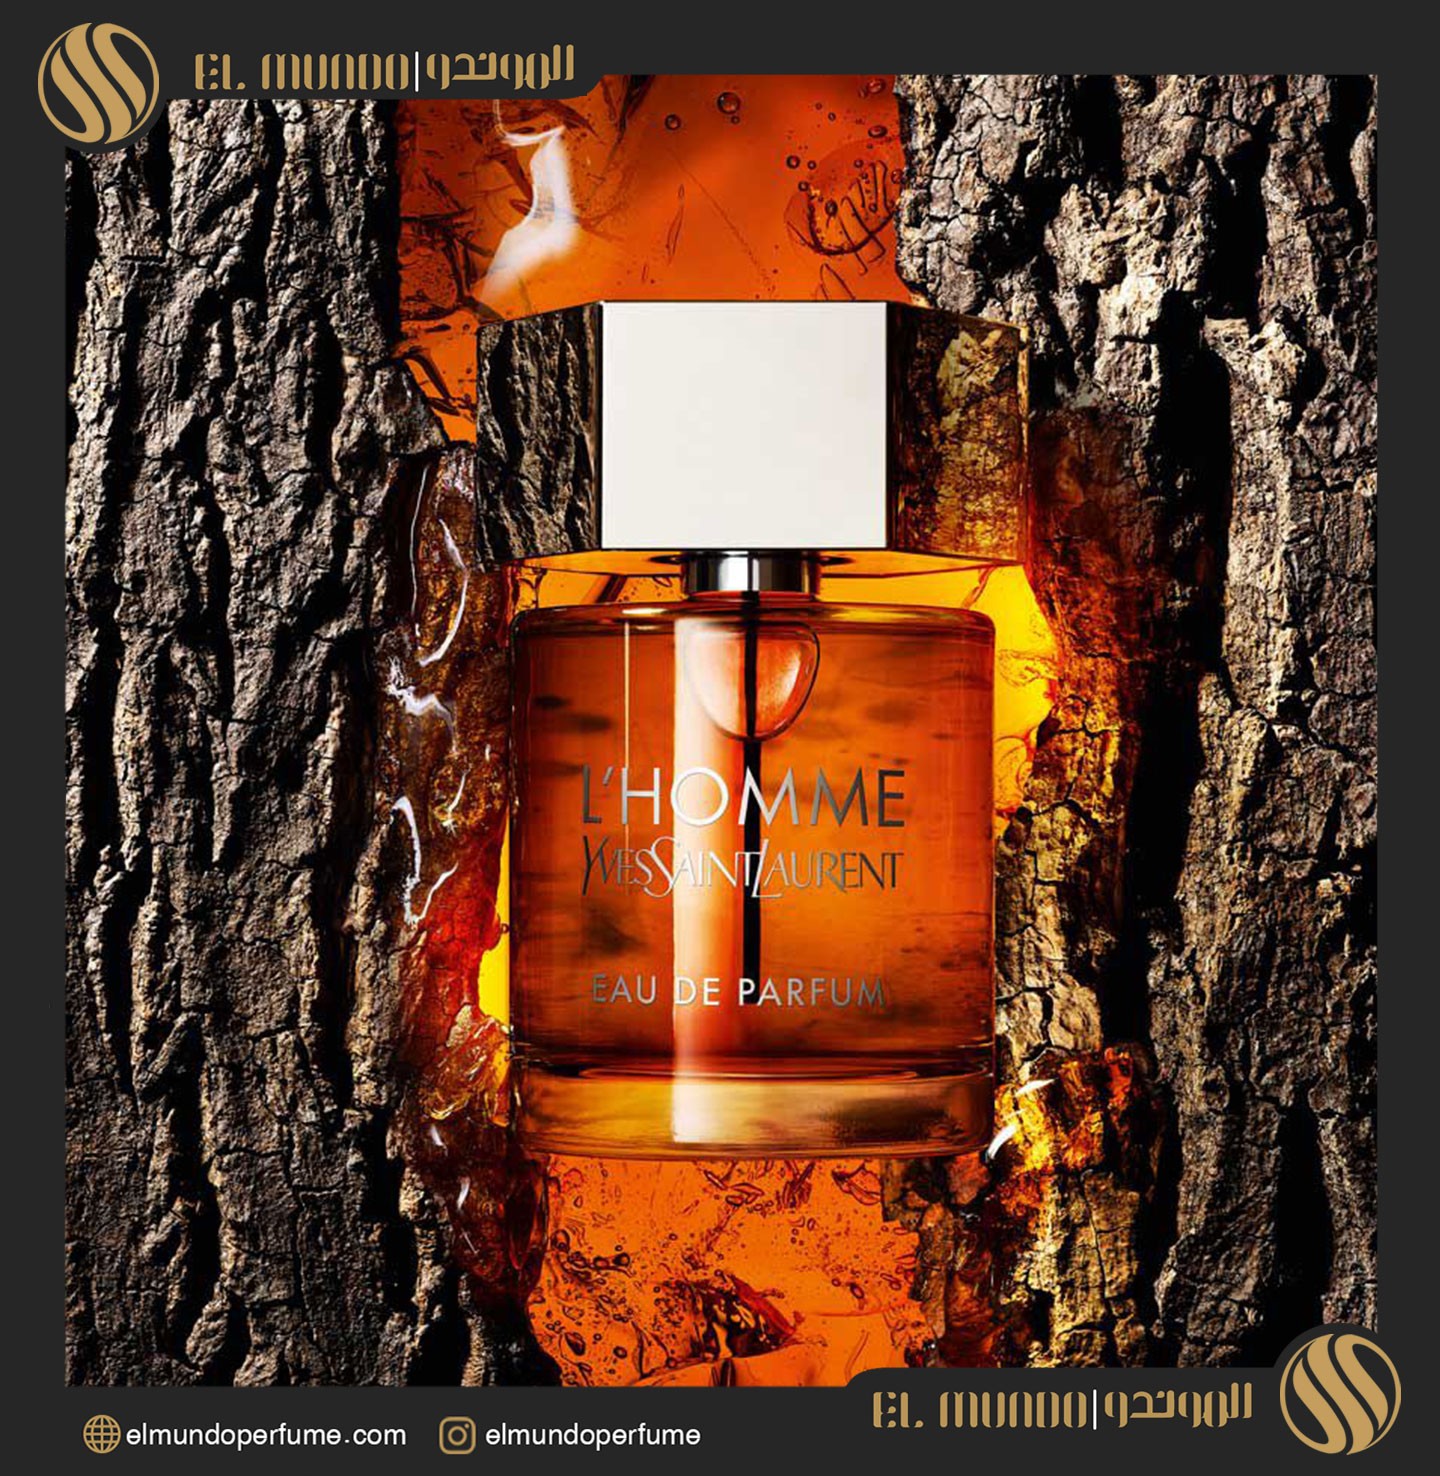 LHomme Eau de Parfum Yves Saint Laurent for men 2 - ادو پرفیوم مردانه ايو سنت لورنت له هوم